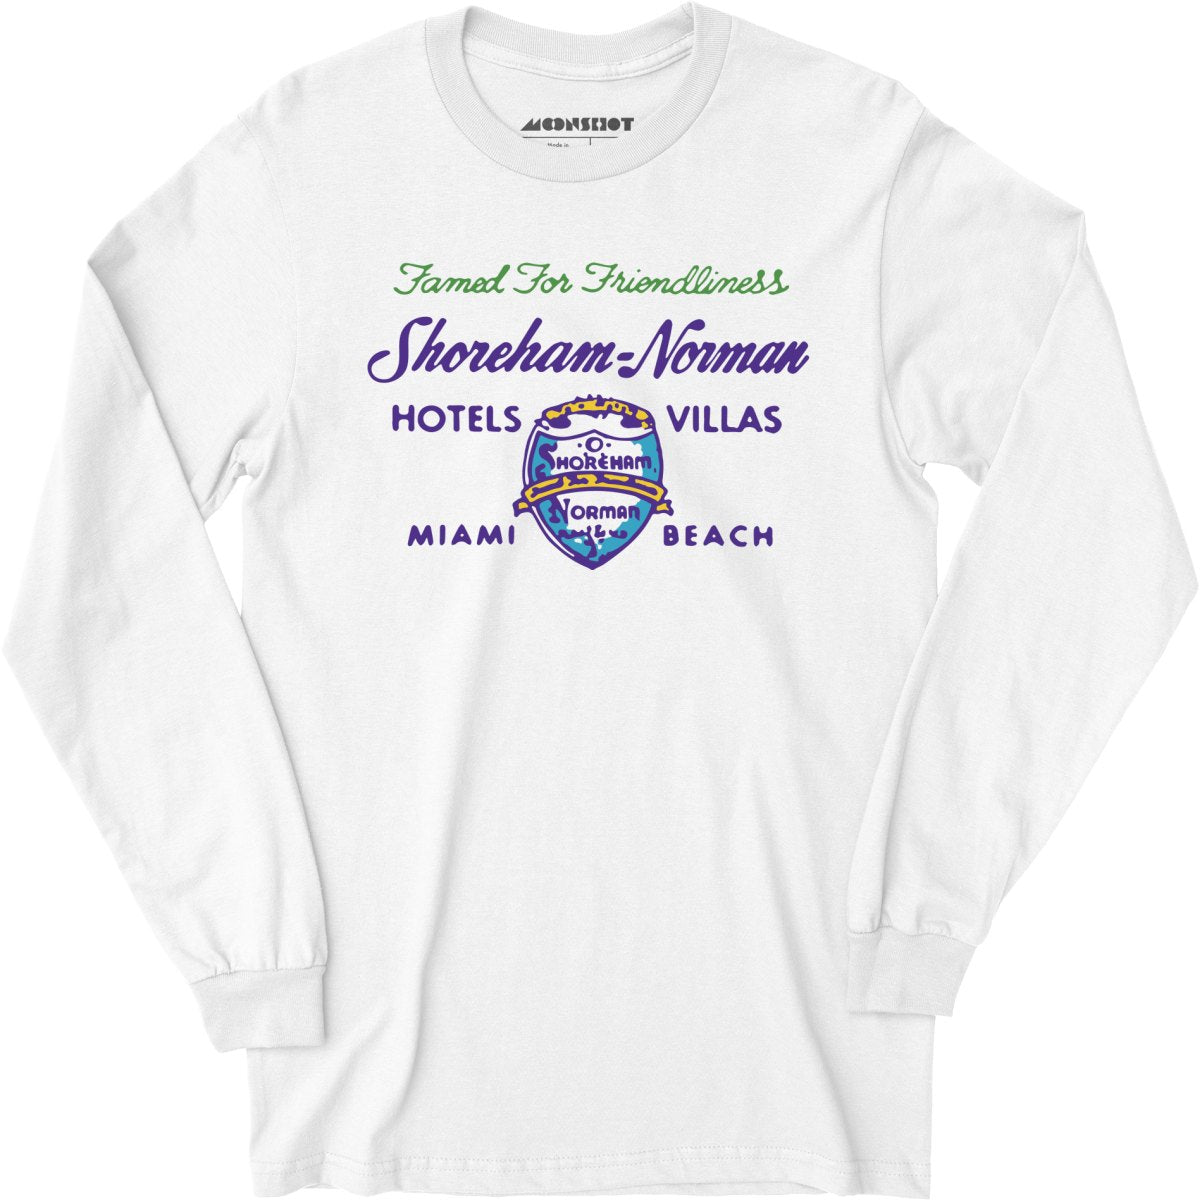 Shoreham Norman Hotels & Villas v2 - Miami, FL - Vintage Hotel - Long Sleeve T-Shirt